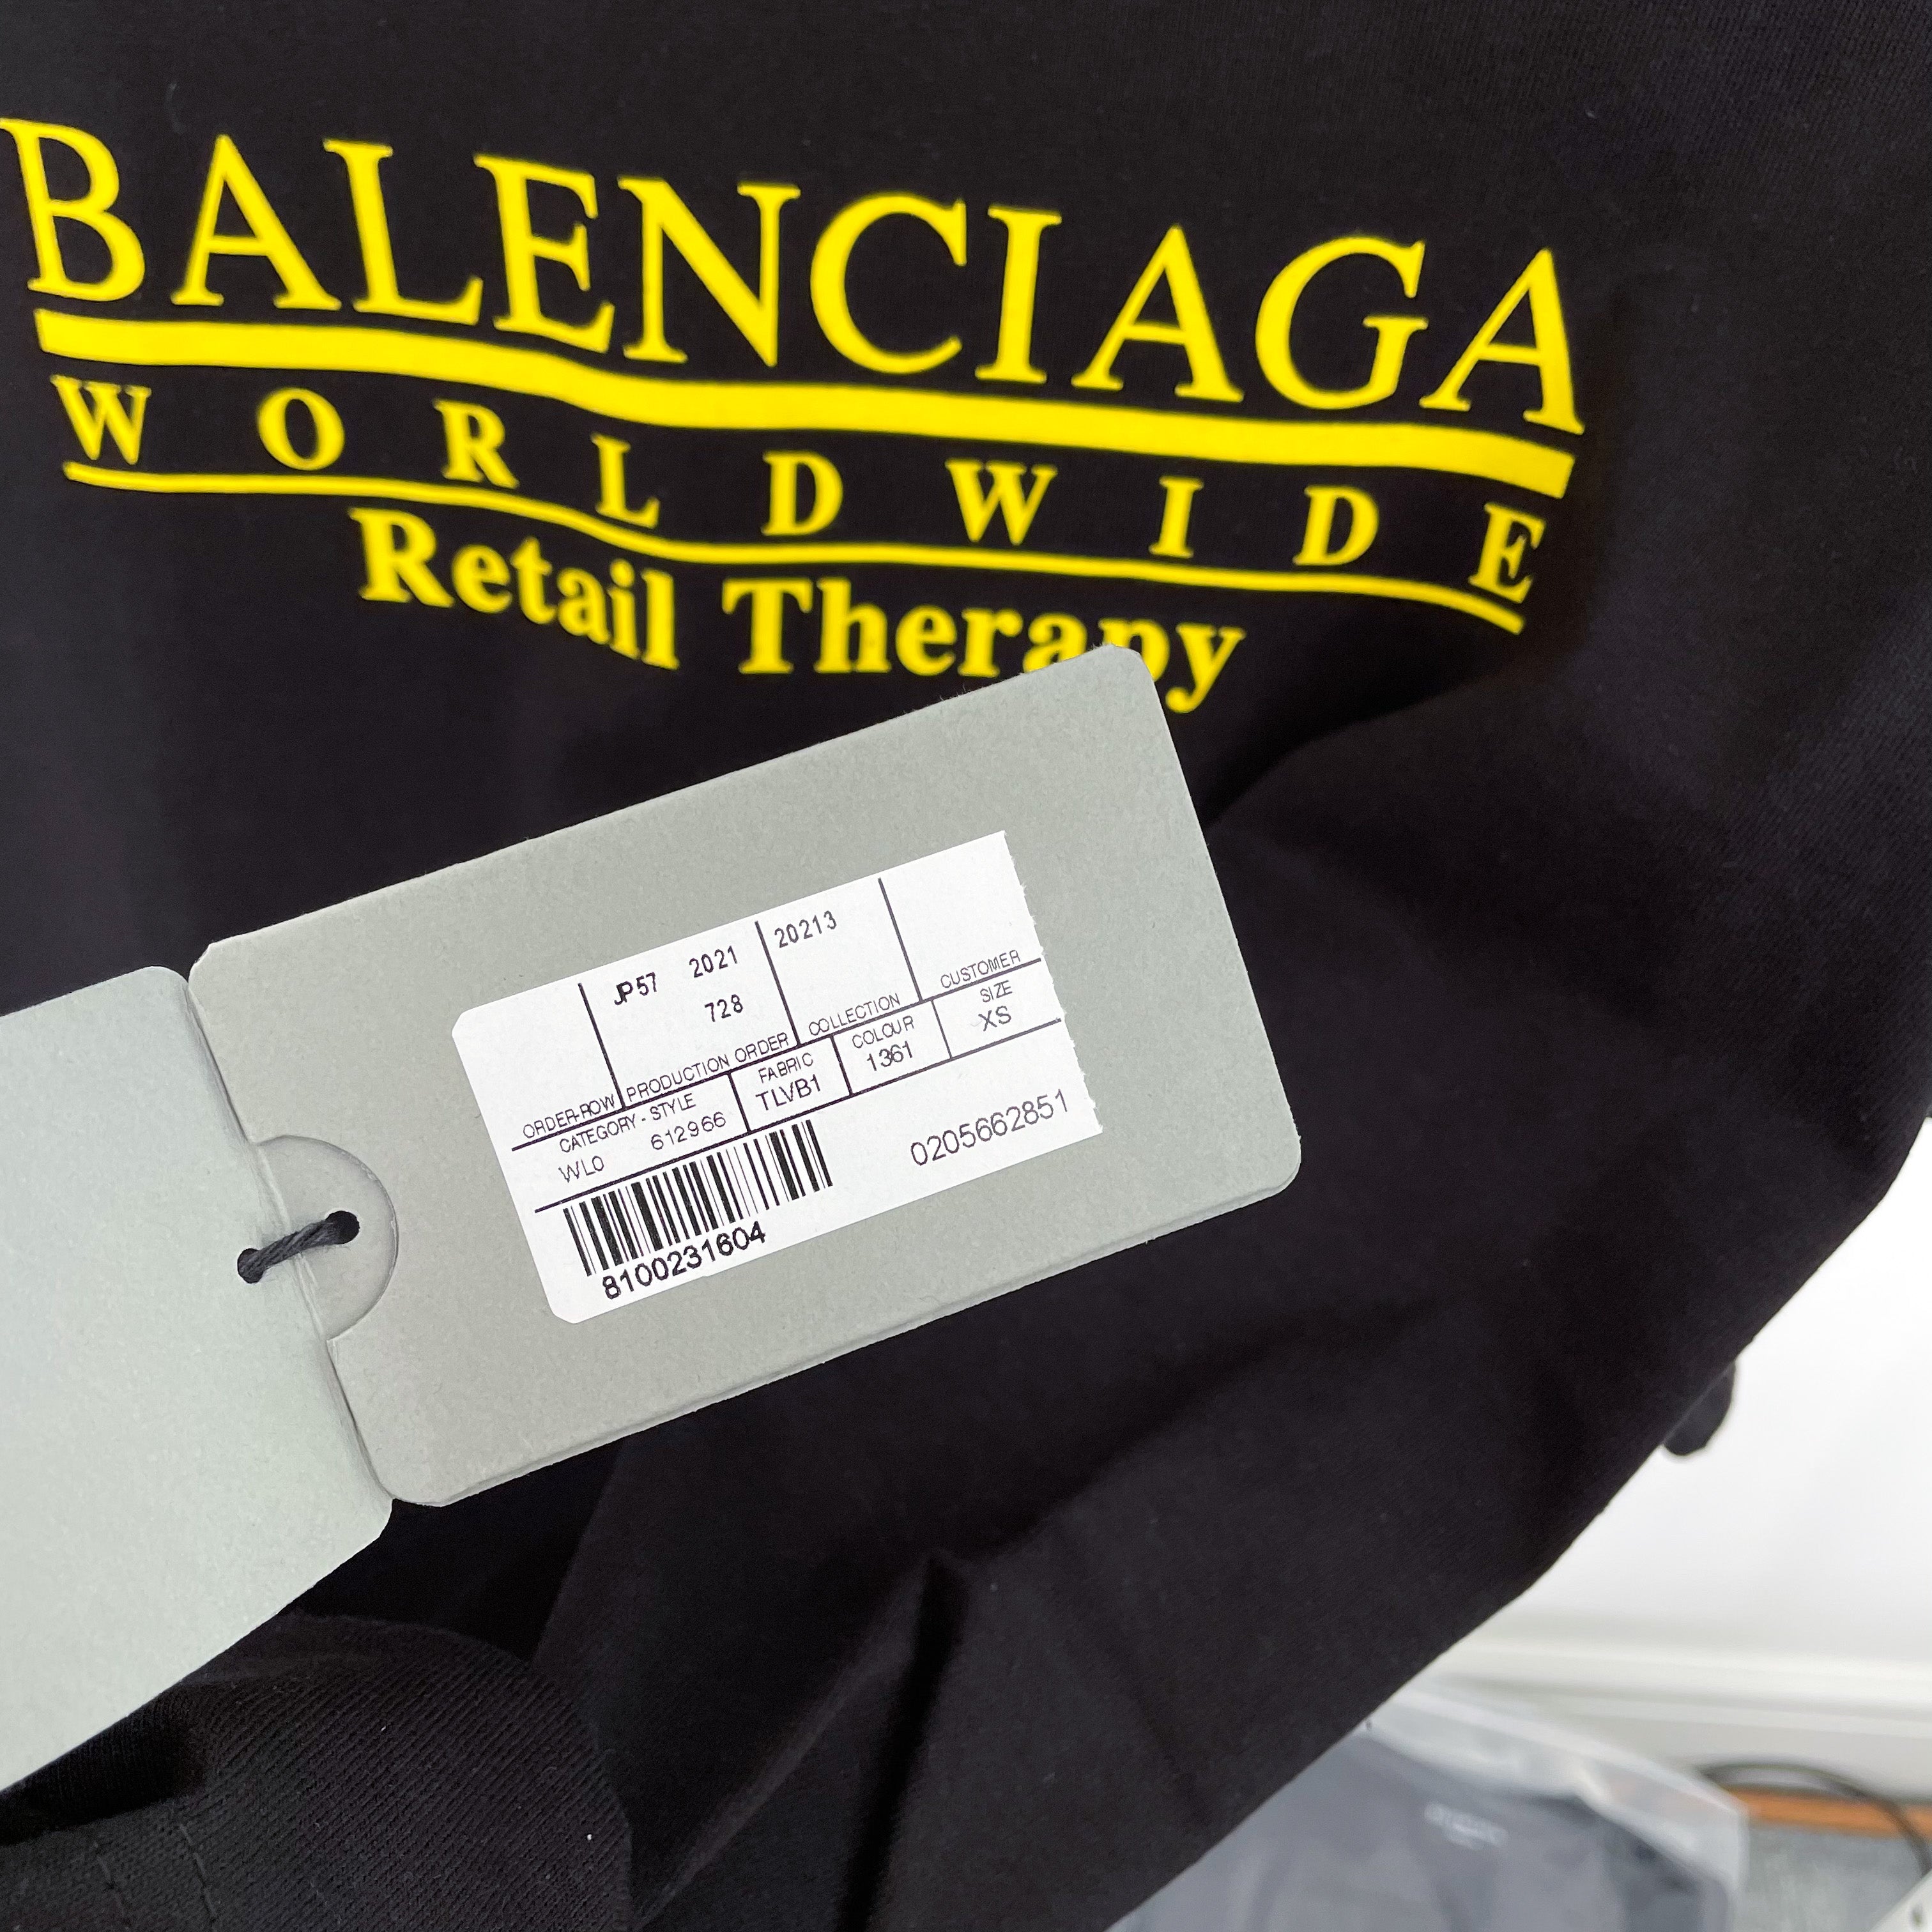 Balenciaga Retail Therapy Tee - Black / Yellow